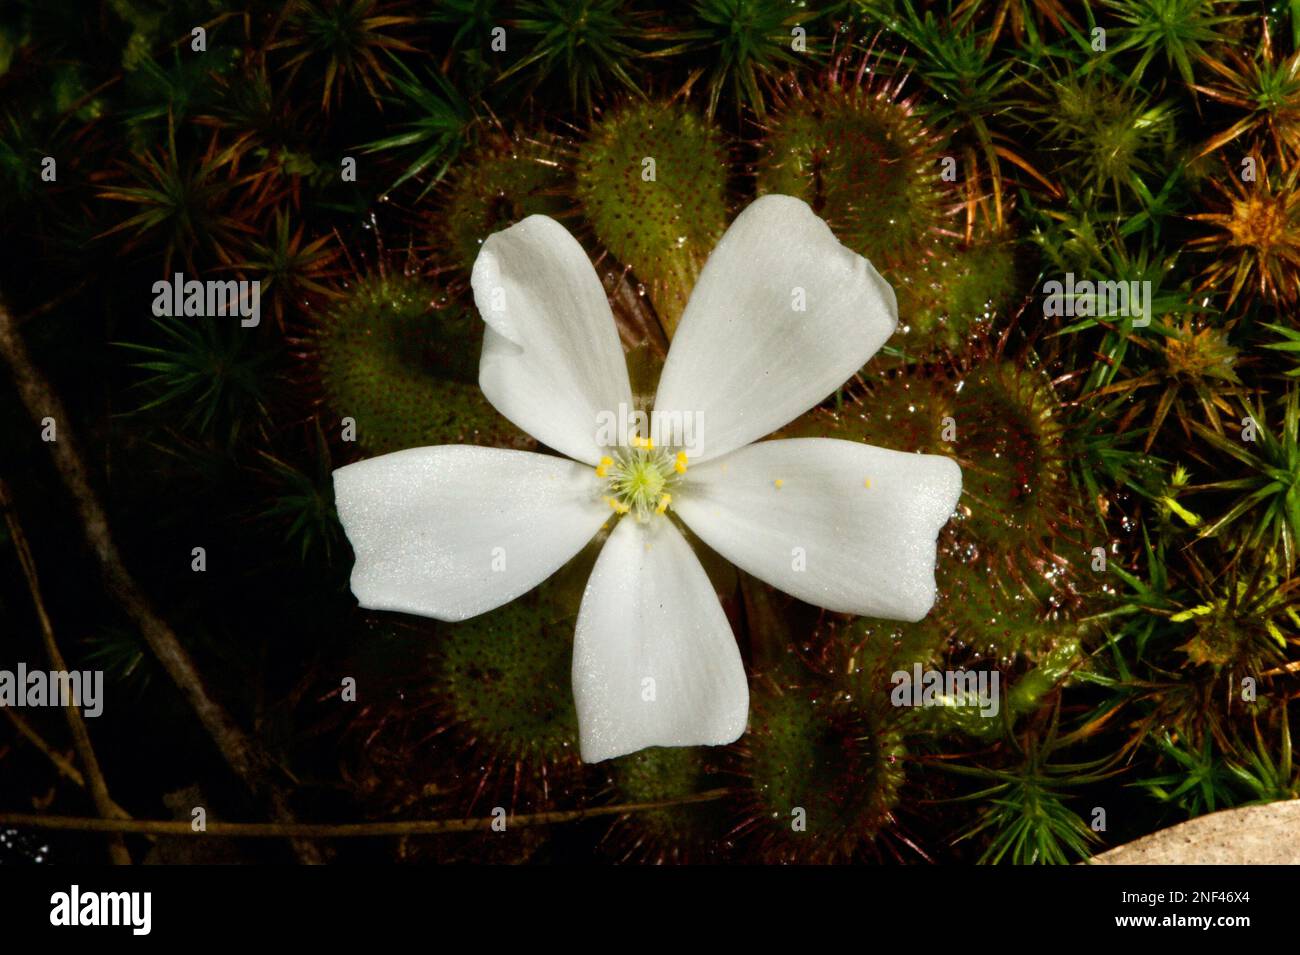 Ein duftend geduckter Sonnentau (Drosera Whitakerii) ist eine Freude, wenn er in der Blüte ist. Der Duft zieht Insekten an, die an den Blättern haften - und gegessen werden! Stockfoto